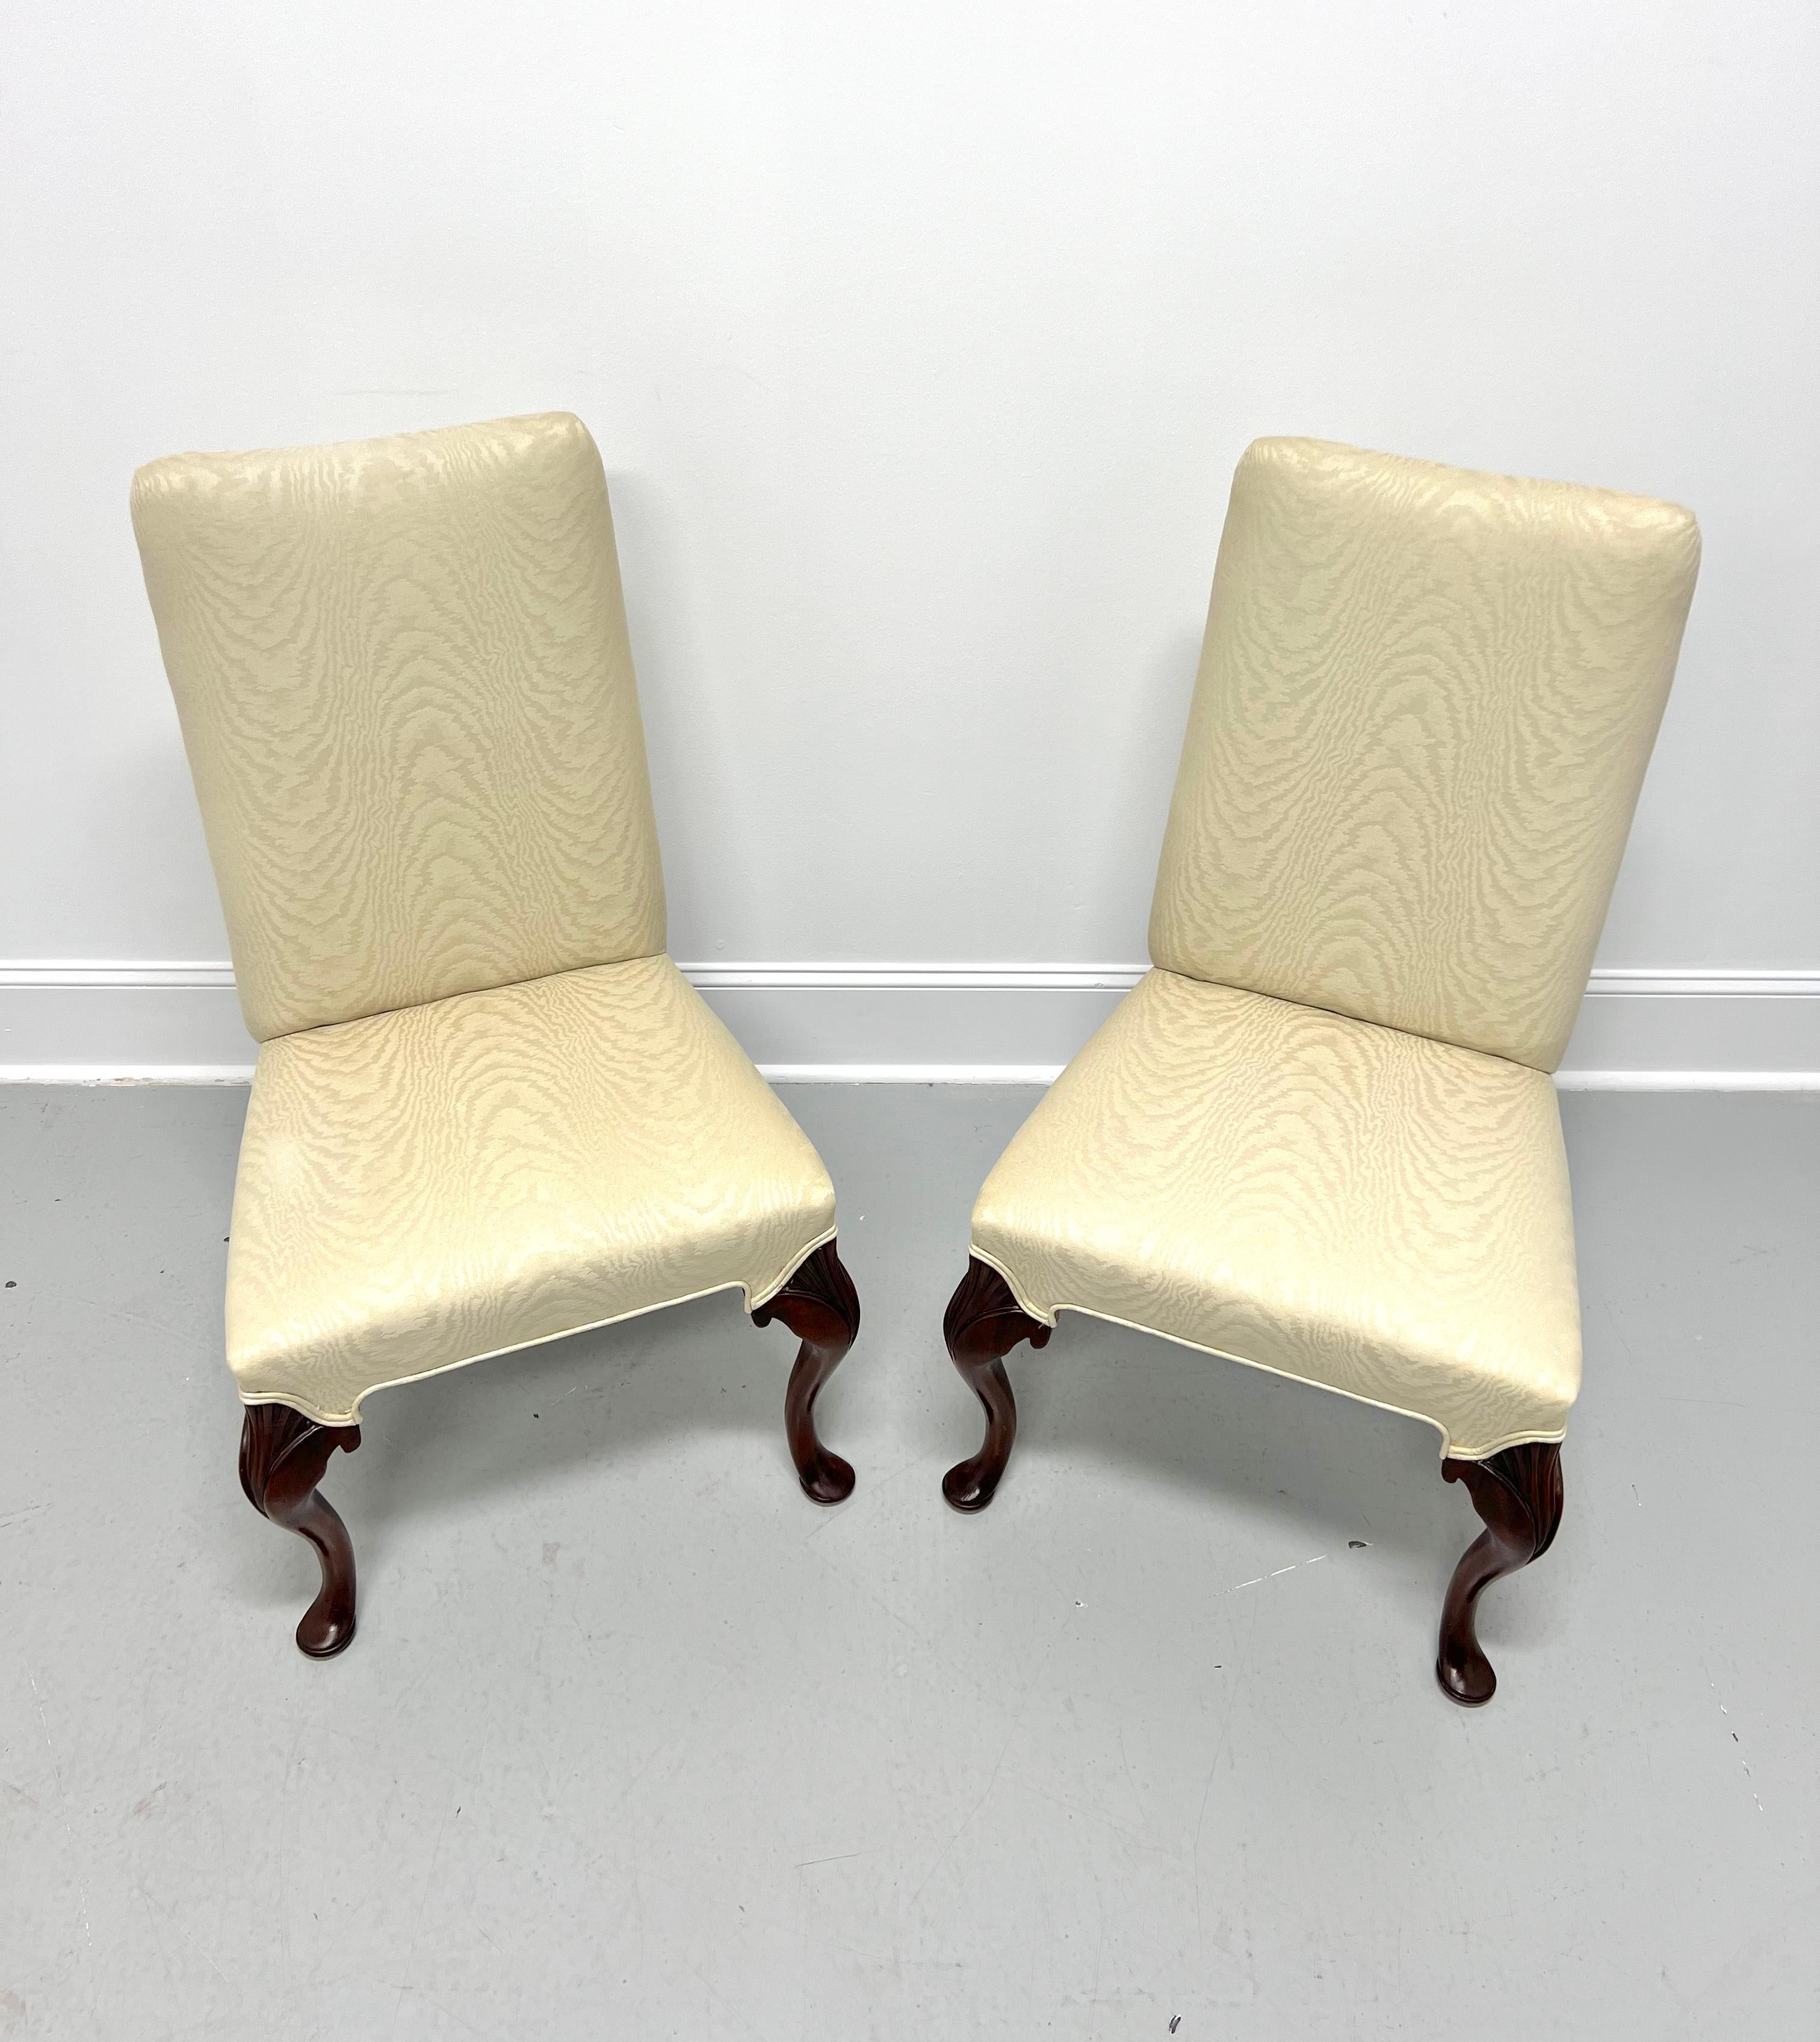 Ein Paar Parsons-Stühle im französisch-provinziellen Stil, ohne Marke, von ähnlicher Qualität wie Hickory Chair oder John Widdicomb. Rahmen aus Mahagoniholz mit hohen Rückenlehnen, geschnitzten Knien, Kabriole-Beinen und pad-Füßen. Gepolstert mit